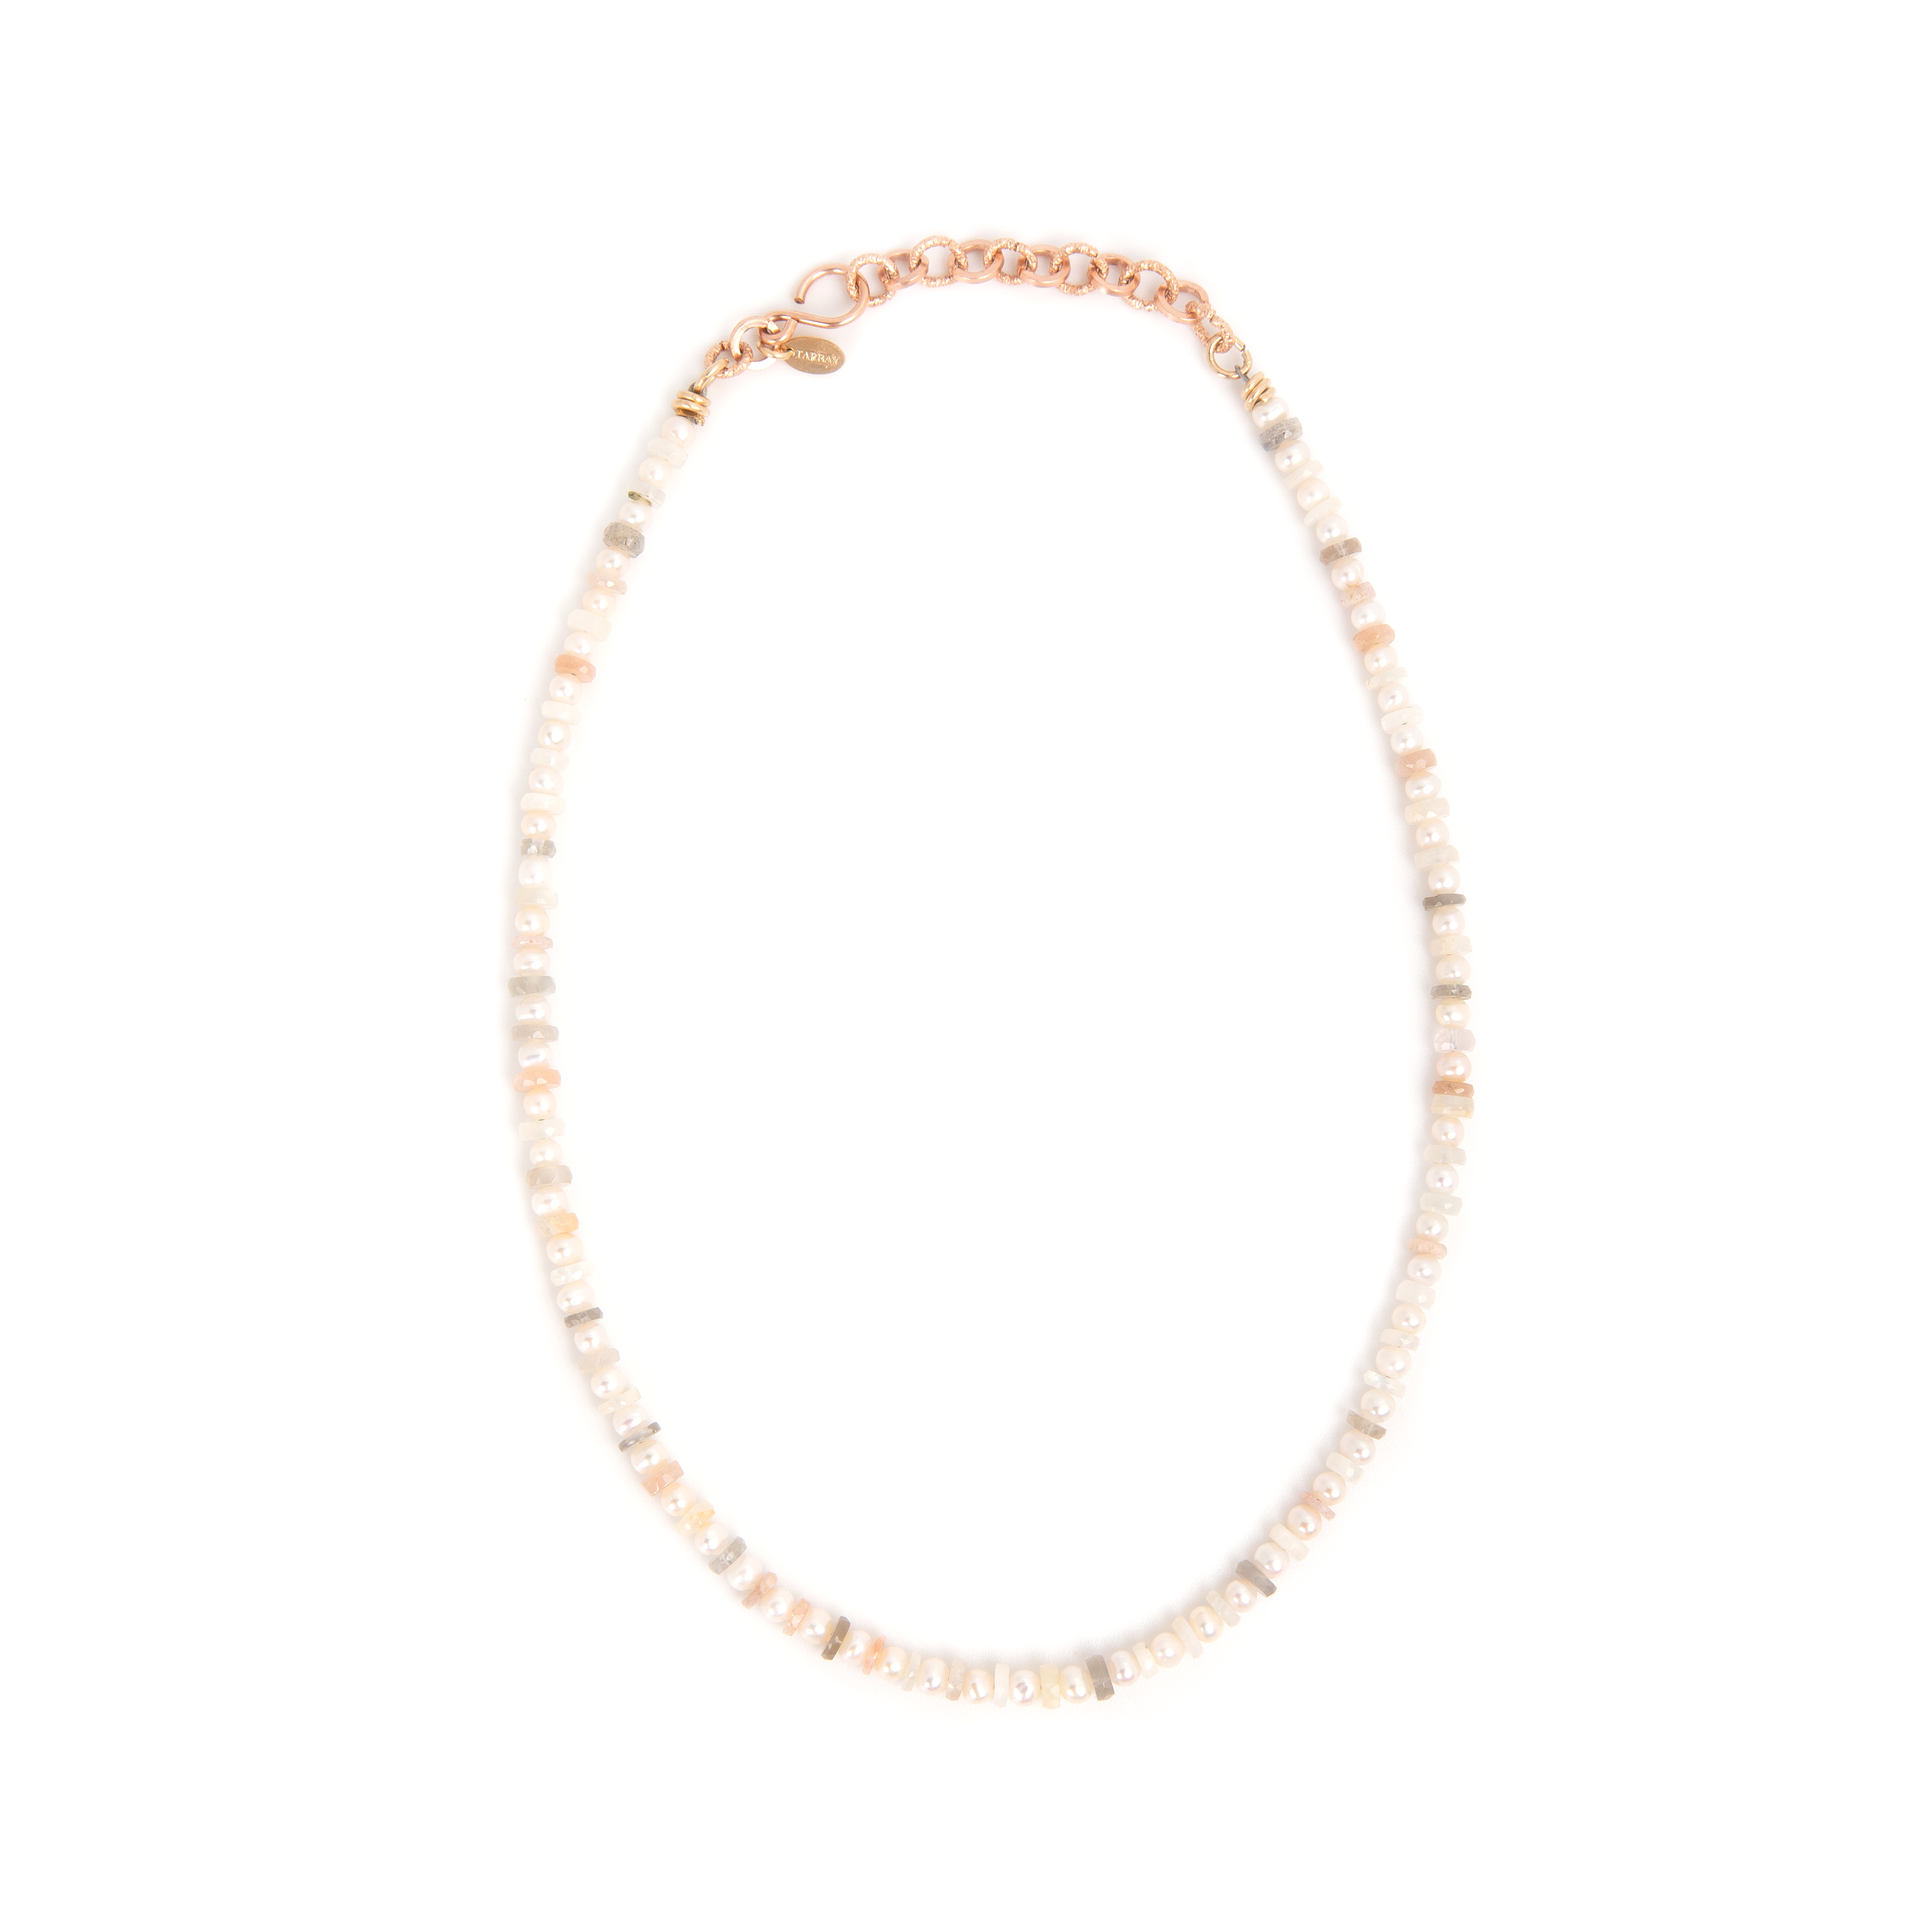 Soledad Necklace #1 (42cm) - Moon Stone Necklaces TARBAY   